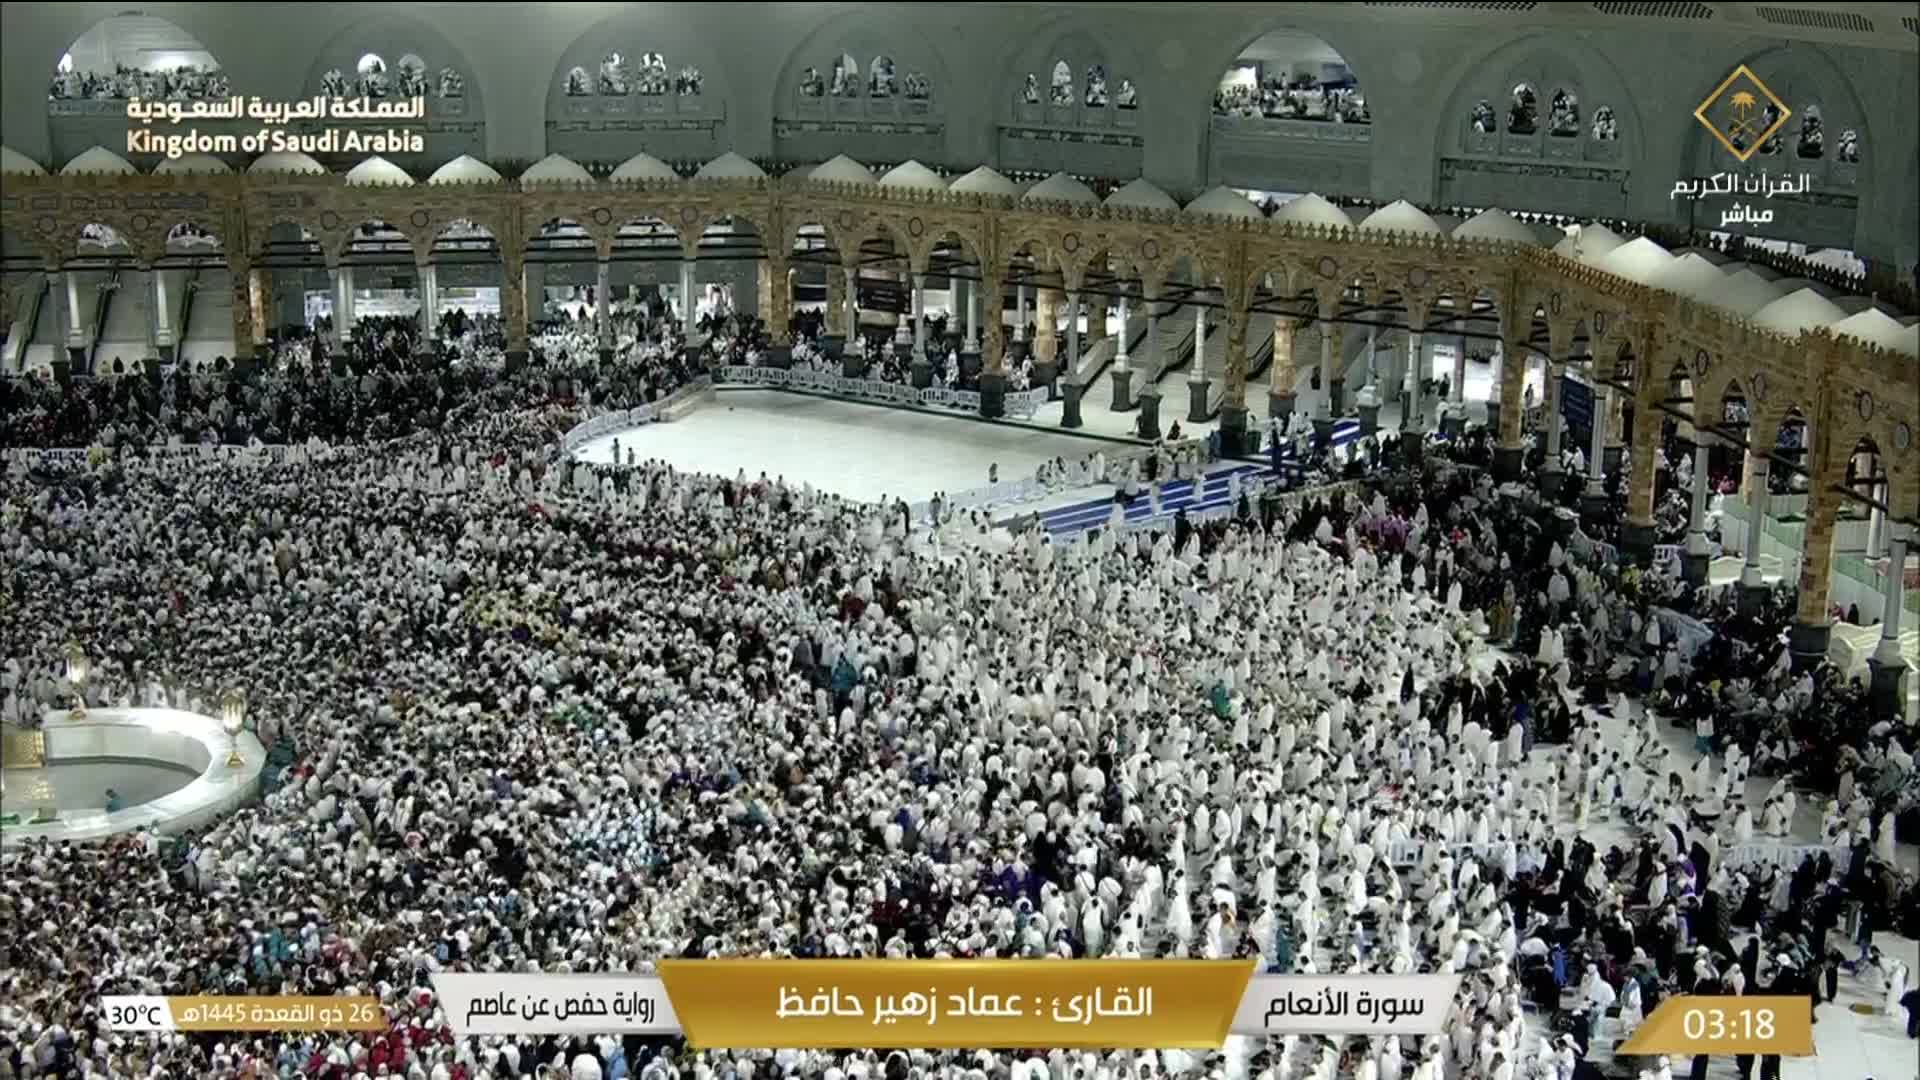 Mecca Thu. 03:36